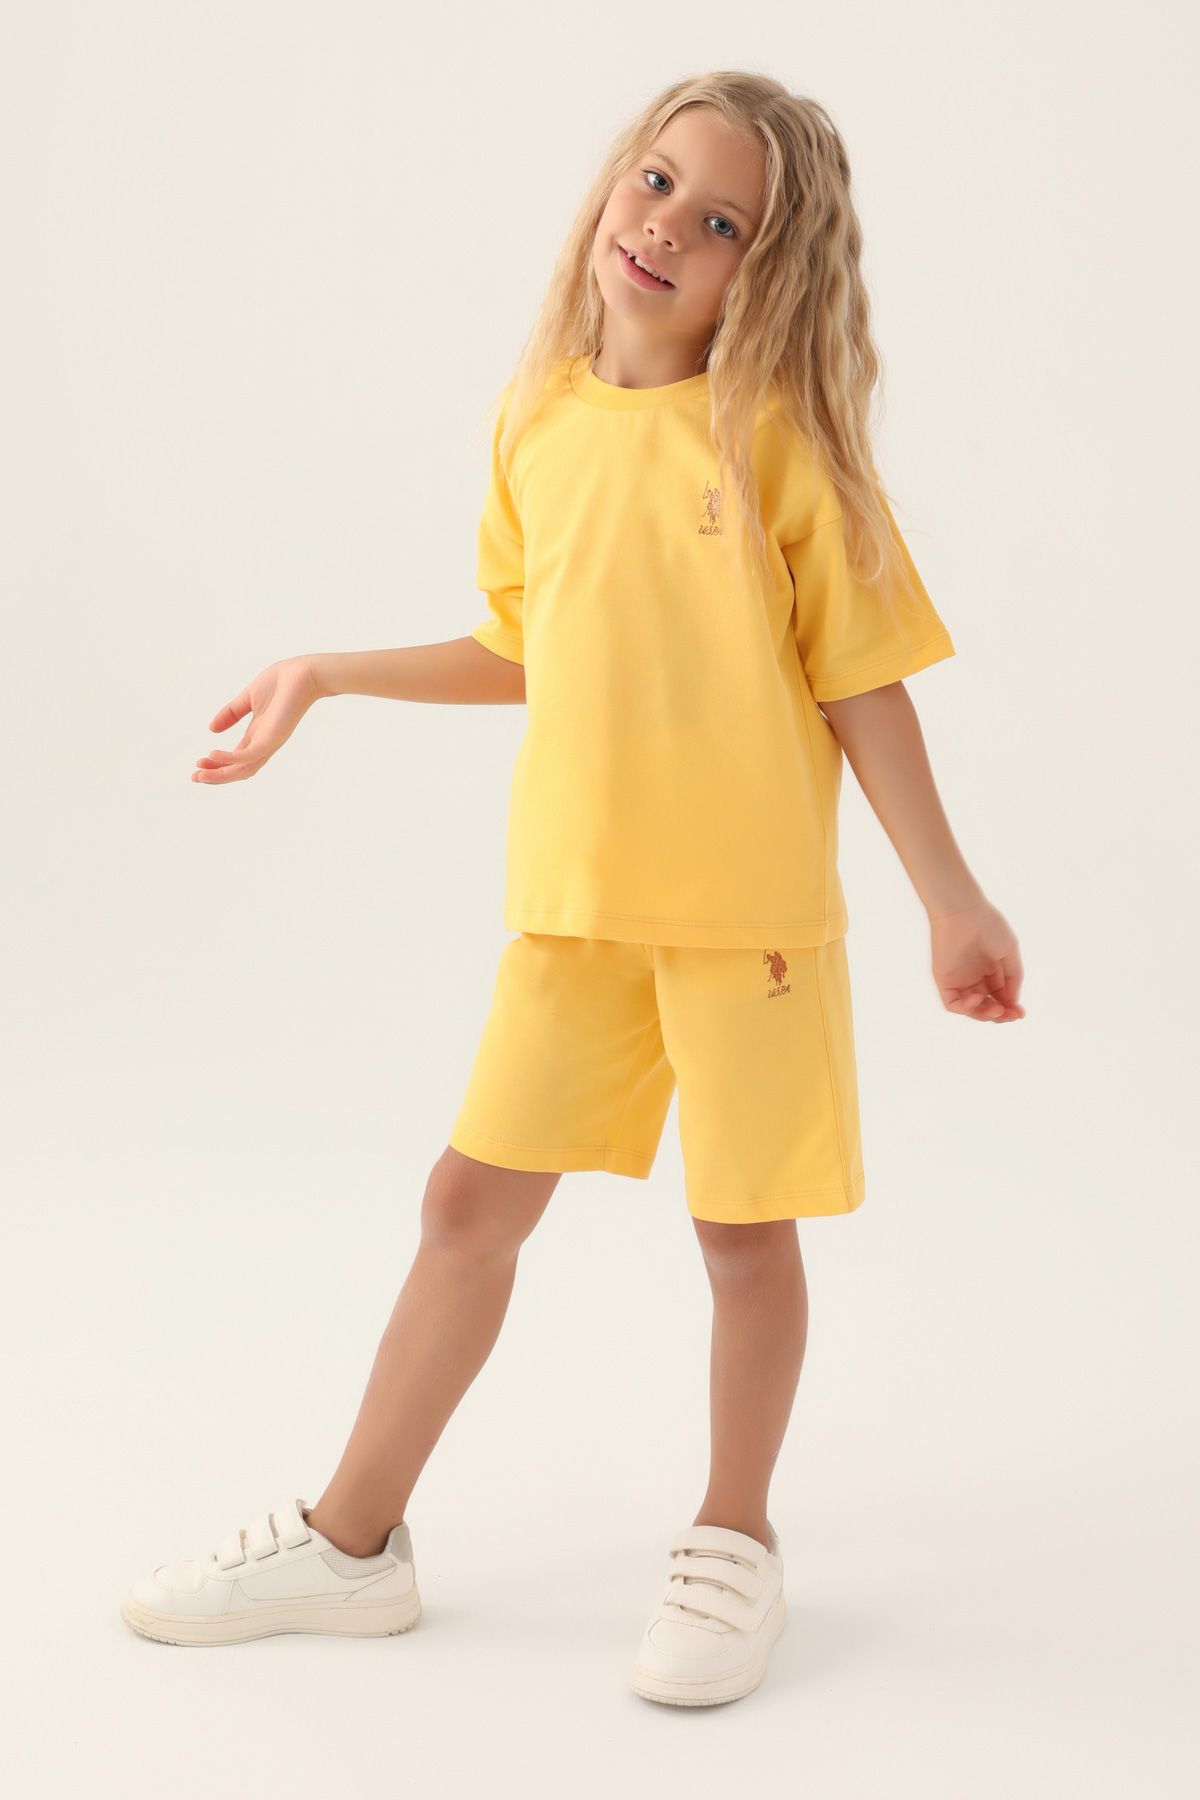 Костюм повседневный детский U.S. POLO Assn. US1822-V1, желтый, 110 костюм повседневный детский u s polo assn us1822 v1 розовая пудра 170